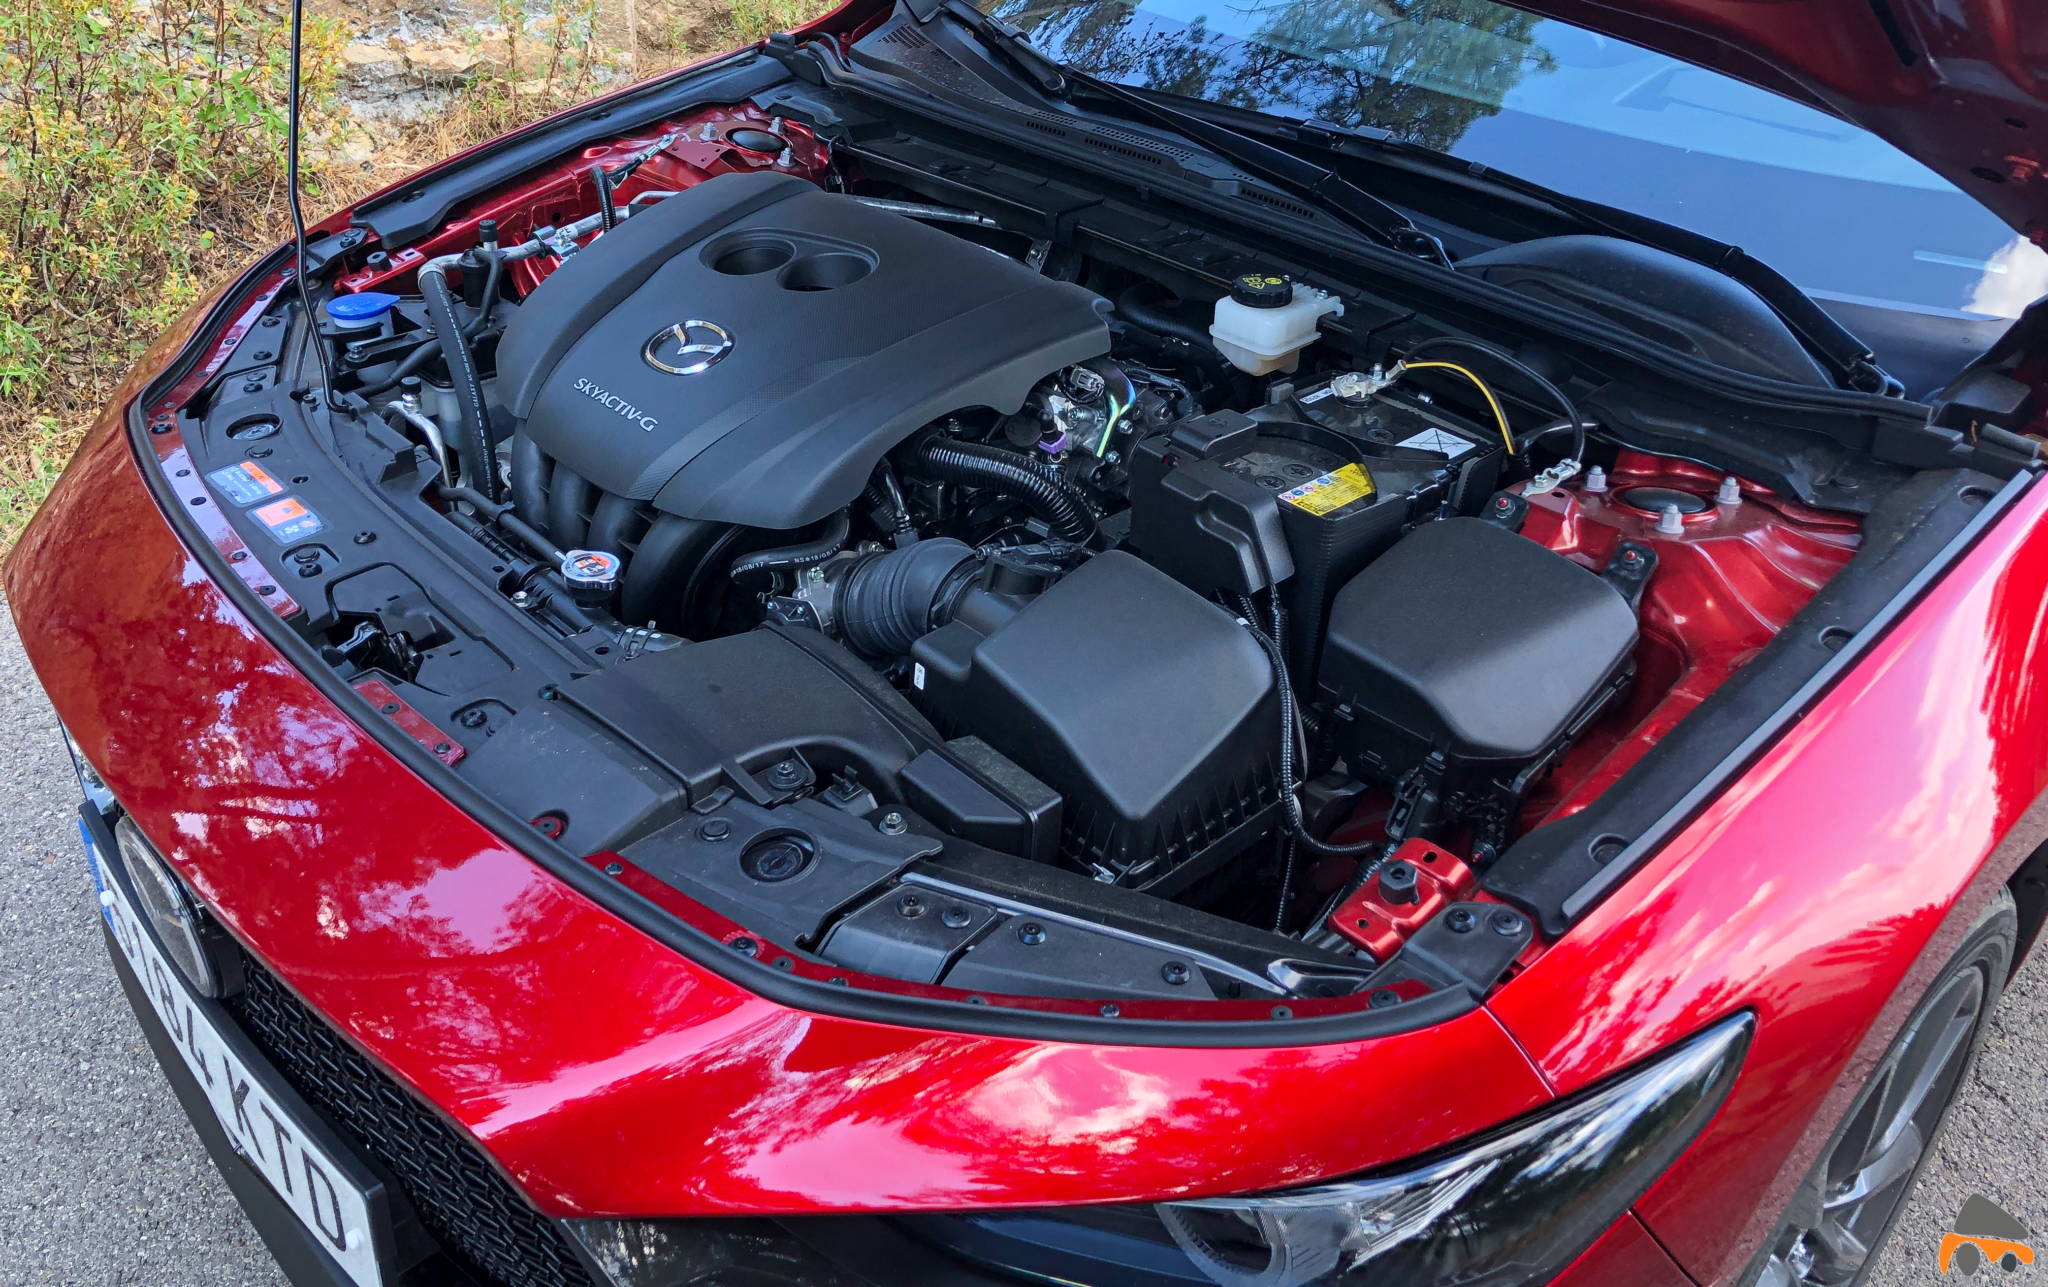 Motor Mazda3 - Nuevo Mazda3: Un compacto deportivo con tecnología Mild-Hybrid